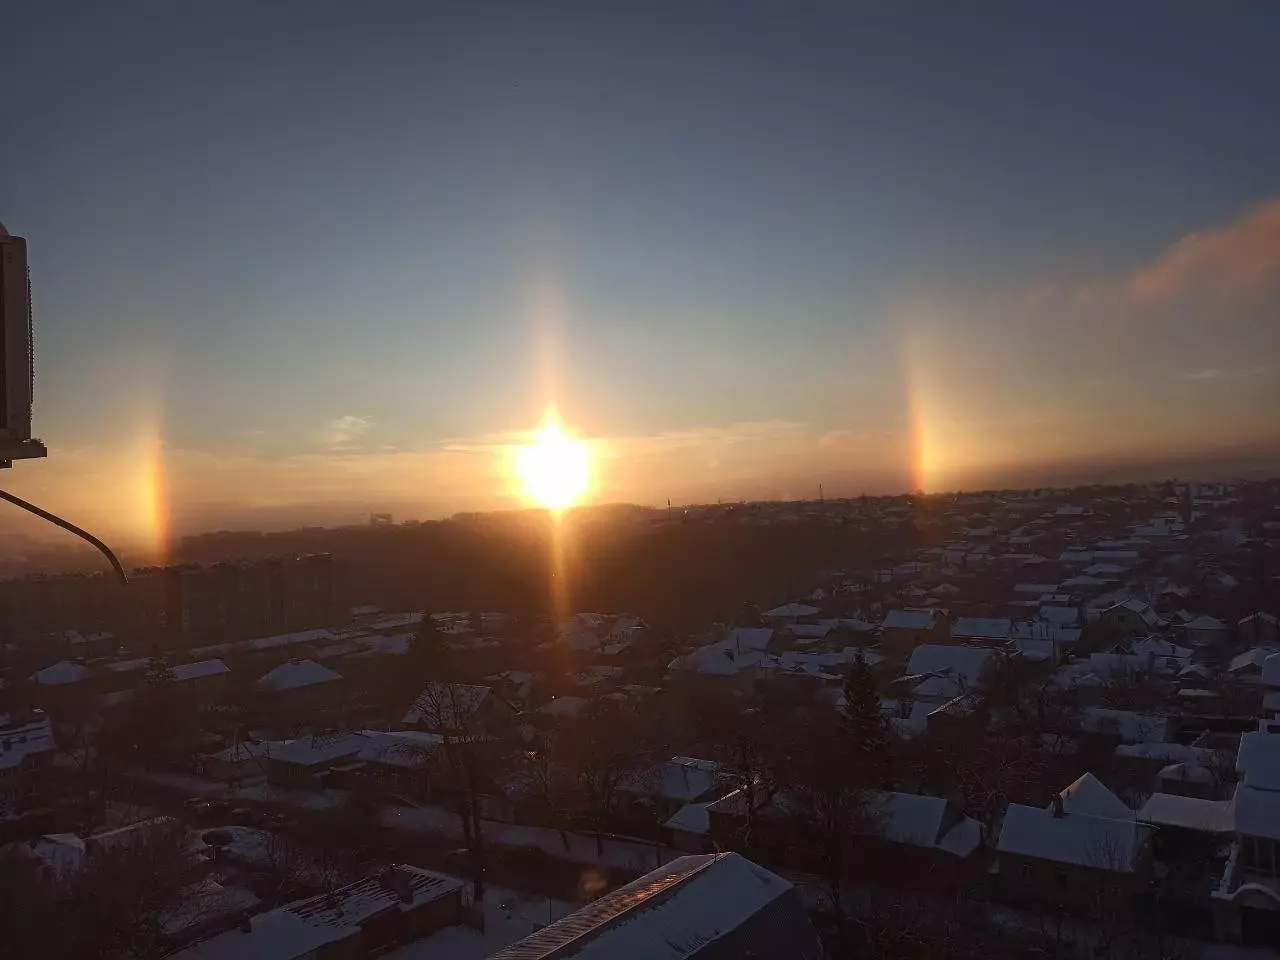 «Волшебное утро»: жителей Ставрополя восхитили три солнца в утреннем небе1